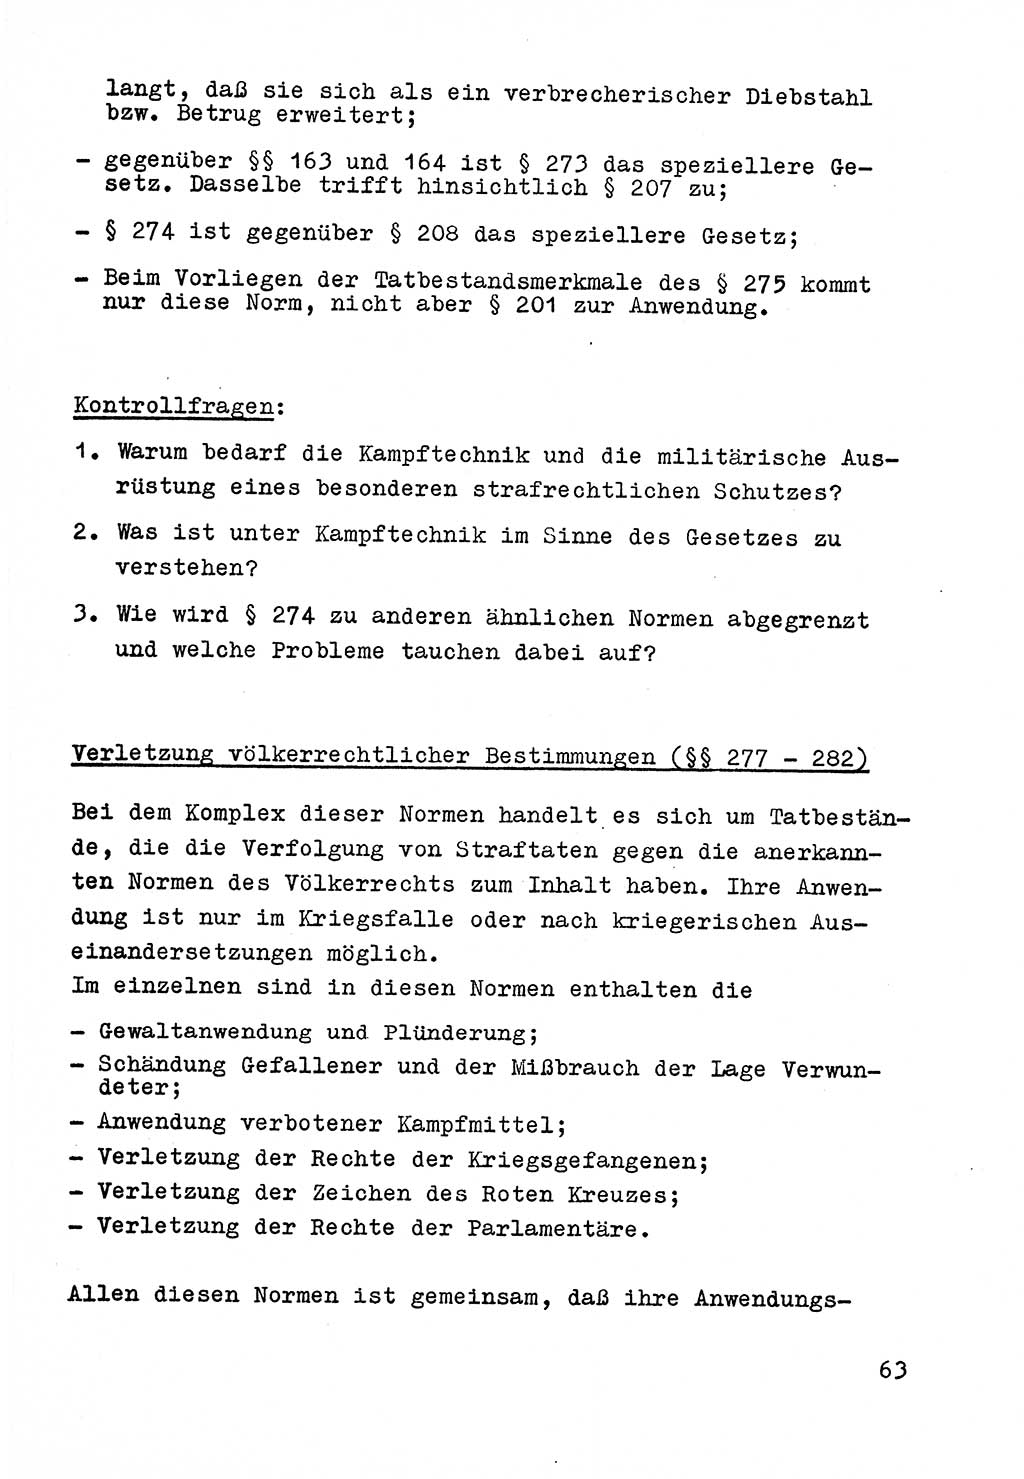 Strafrecht der DDR (Deutsche Demokratische Republik), Besonderer Teil, Lehrmaterial, Heft 9 1969, Seite 63 (Strafr. DDR BT Lehrmat. H. 9 1969, S. 63)